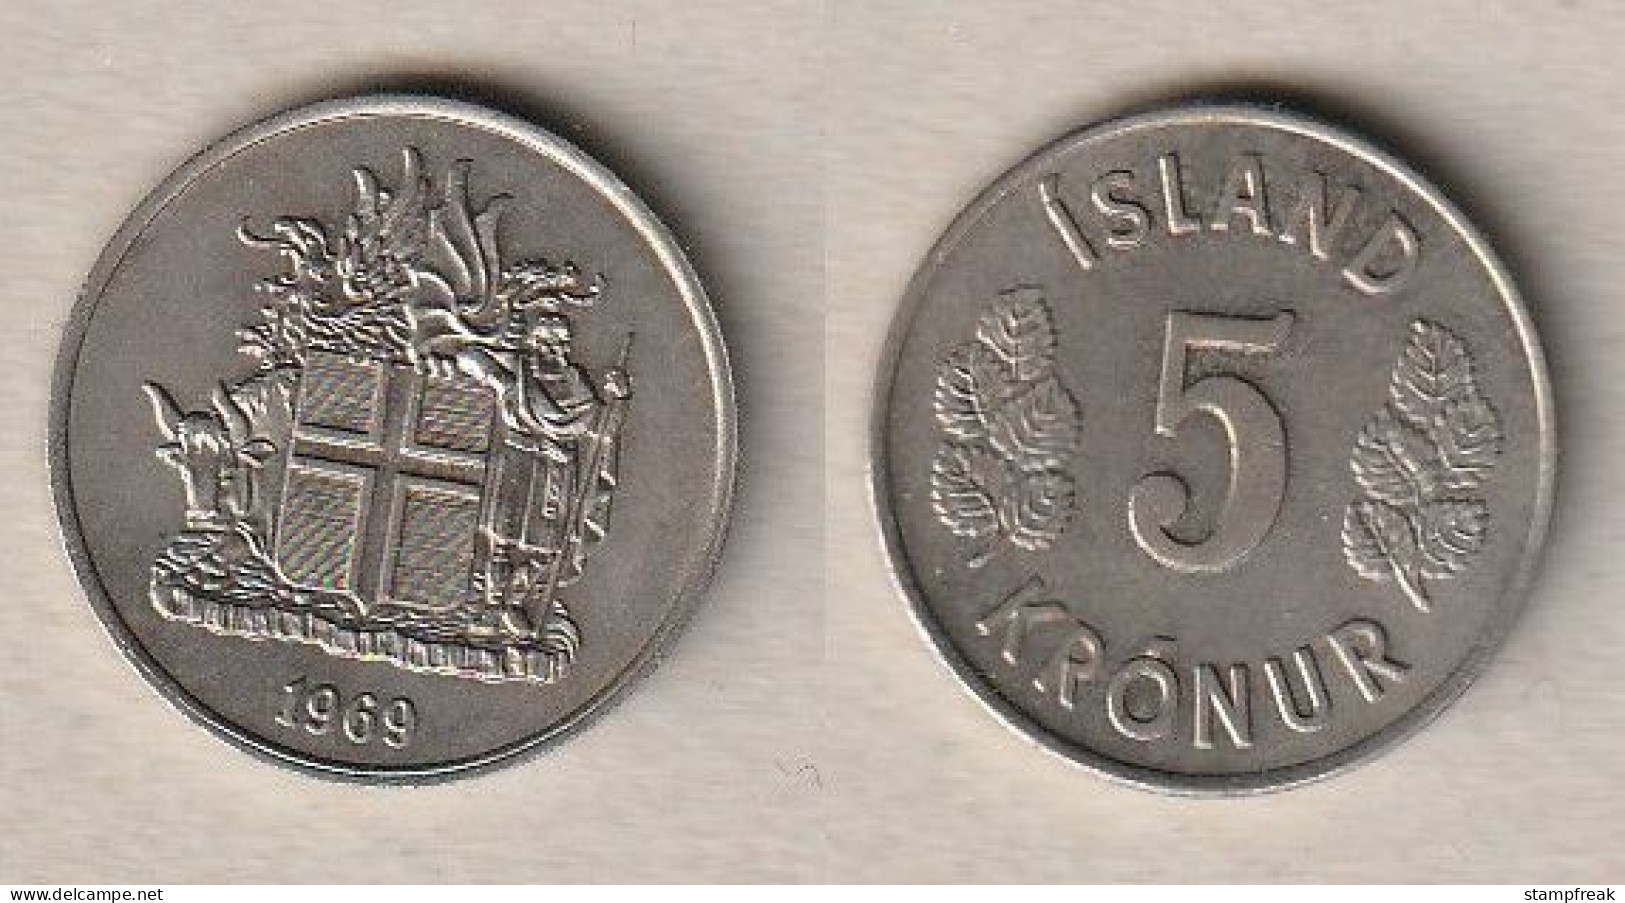 00146) Island, 5 Kronen 1969 - Iceland